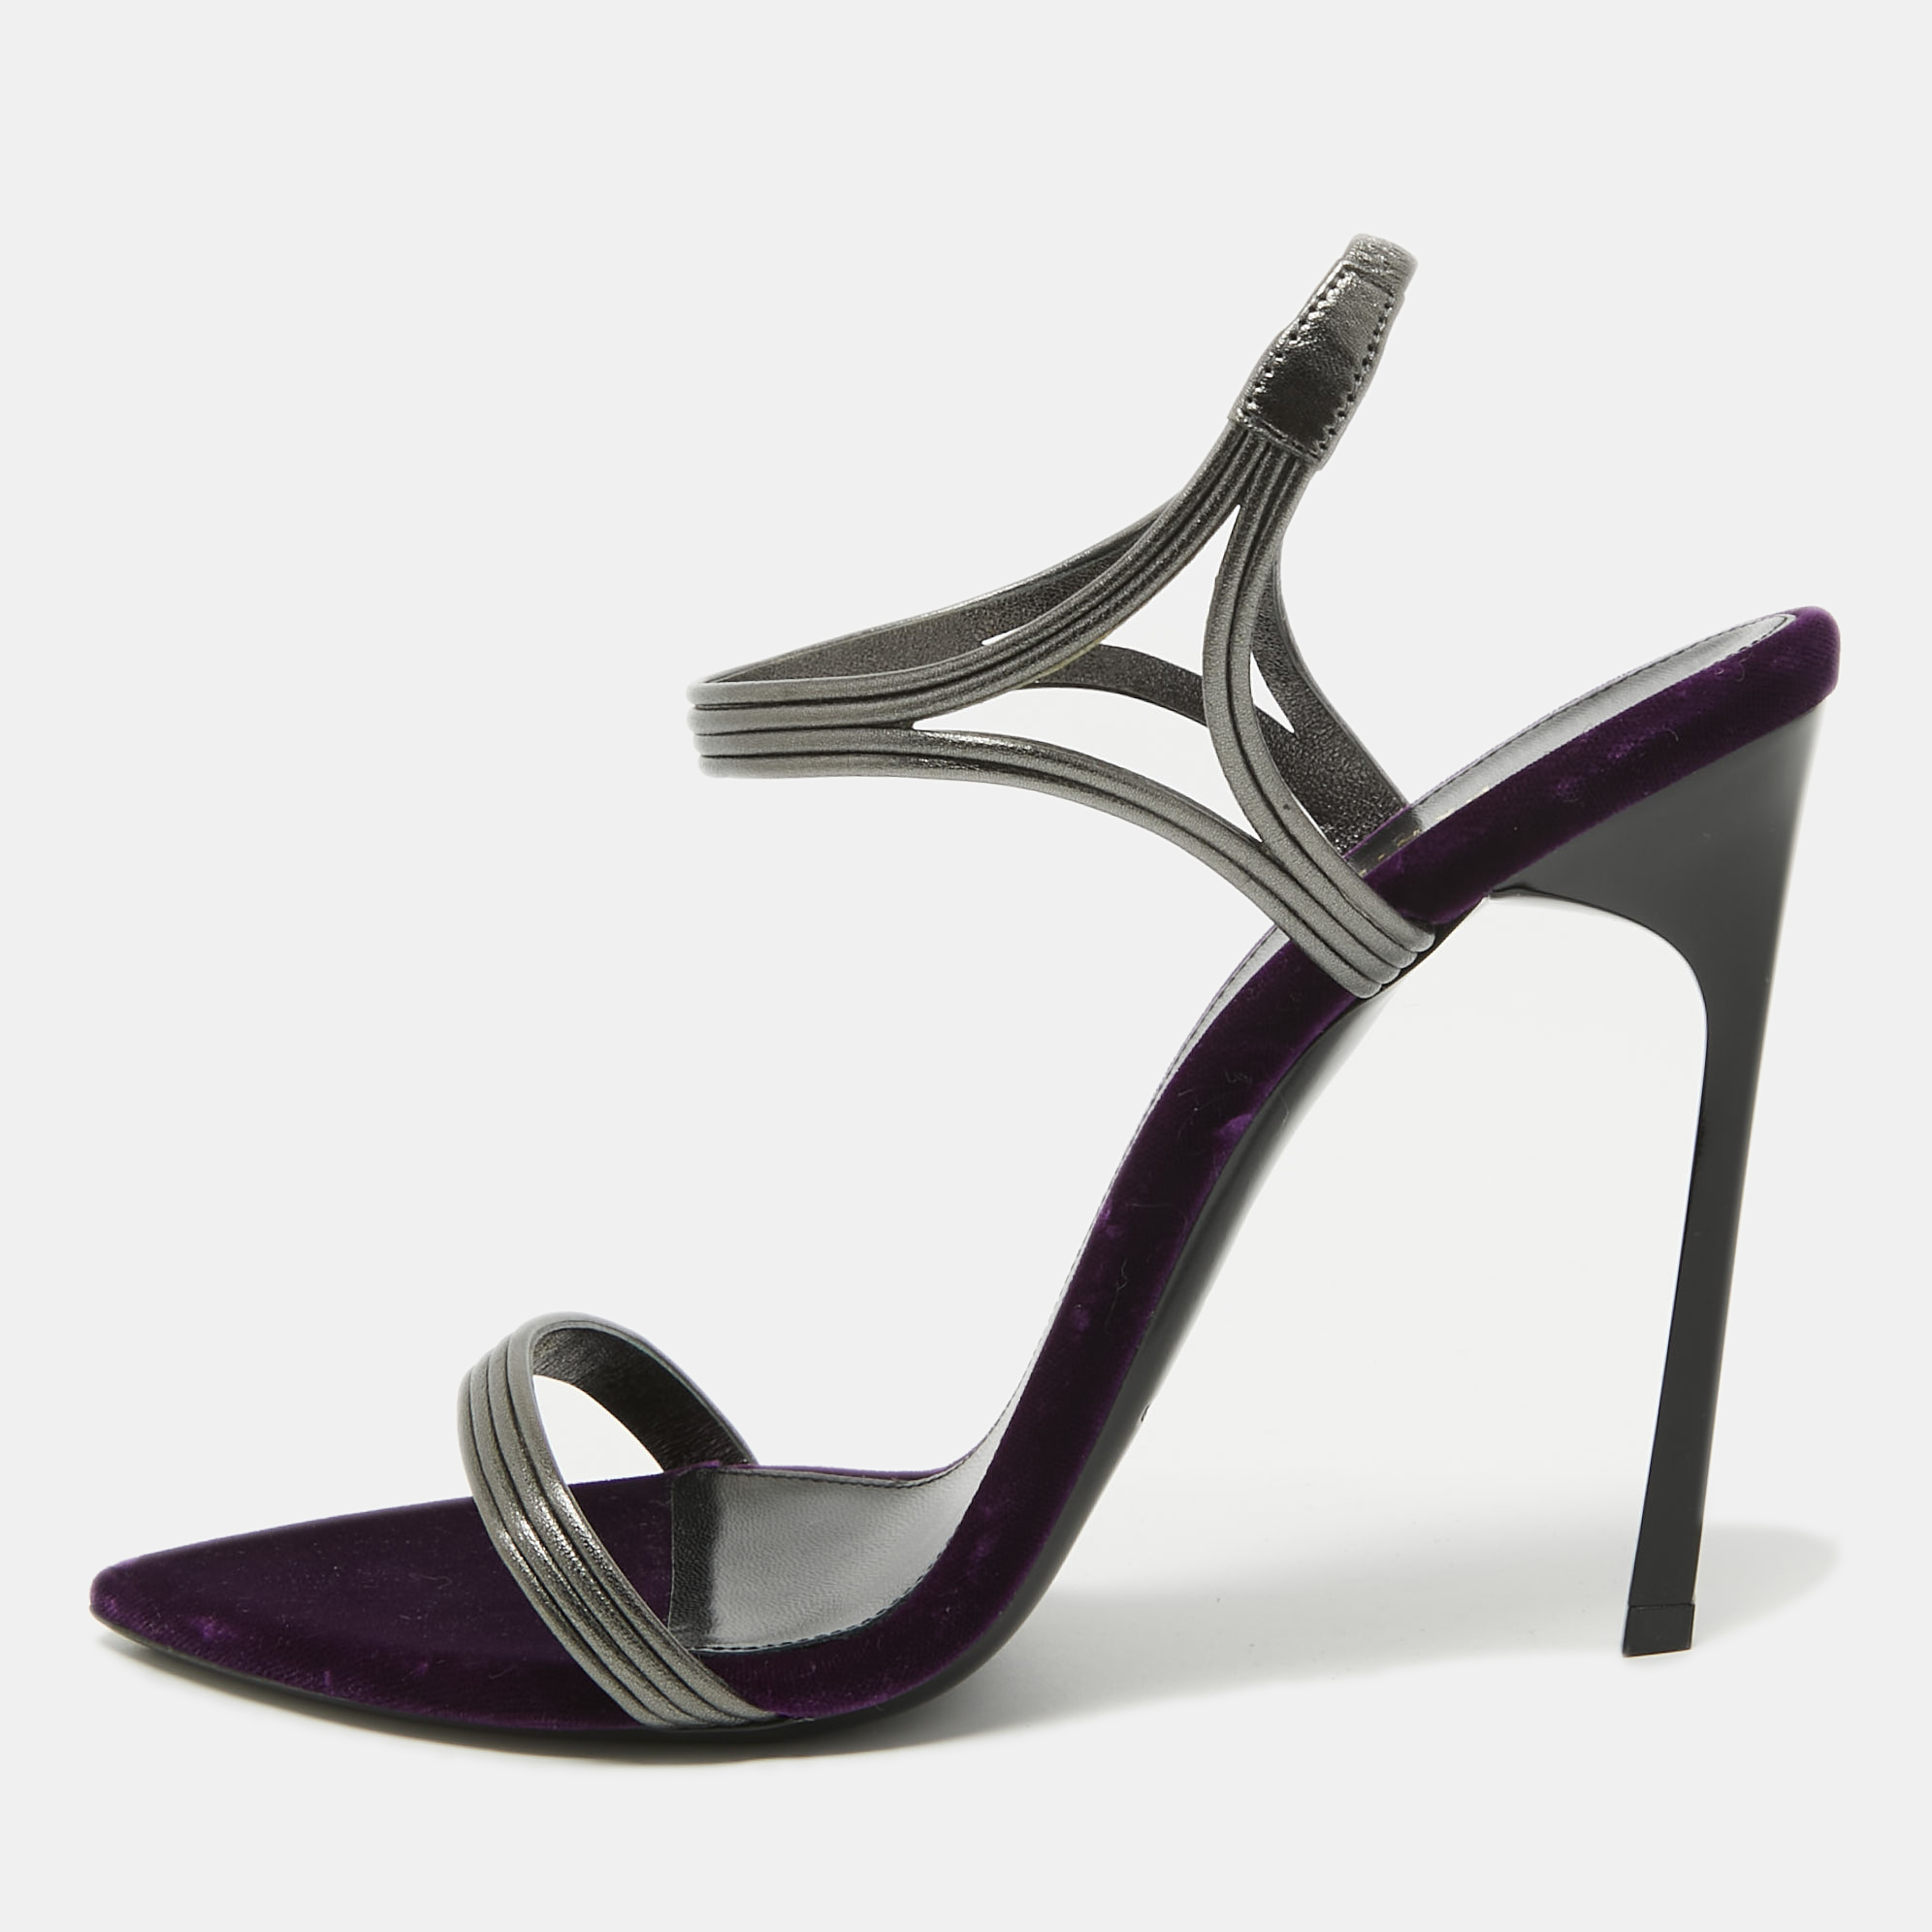 Saint laurent paris saint laurent metallic silver/purple leather and velvet ankle strap sandals size 40.5